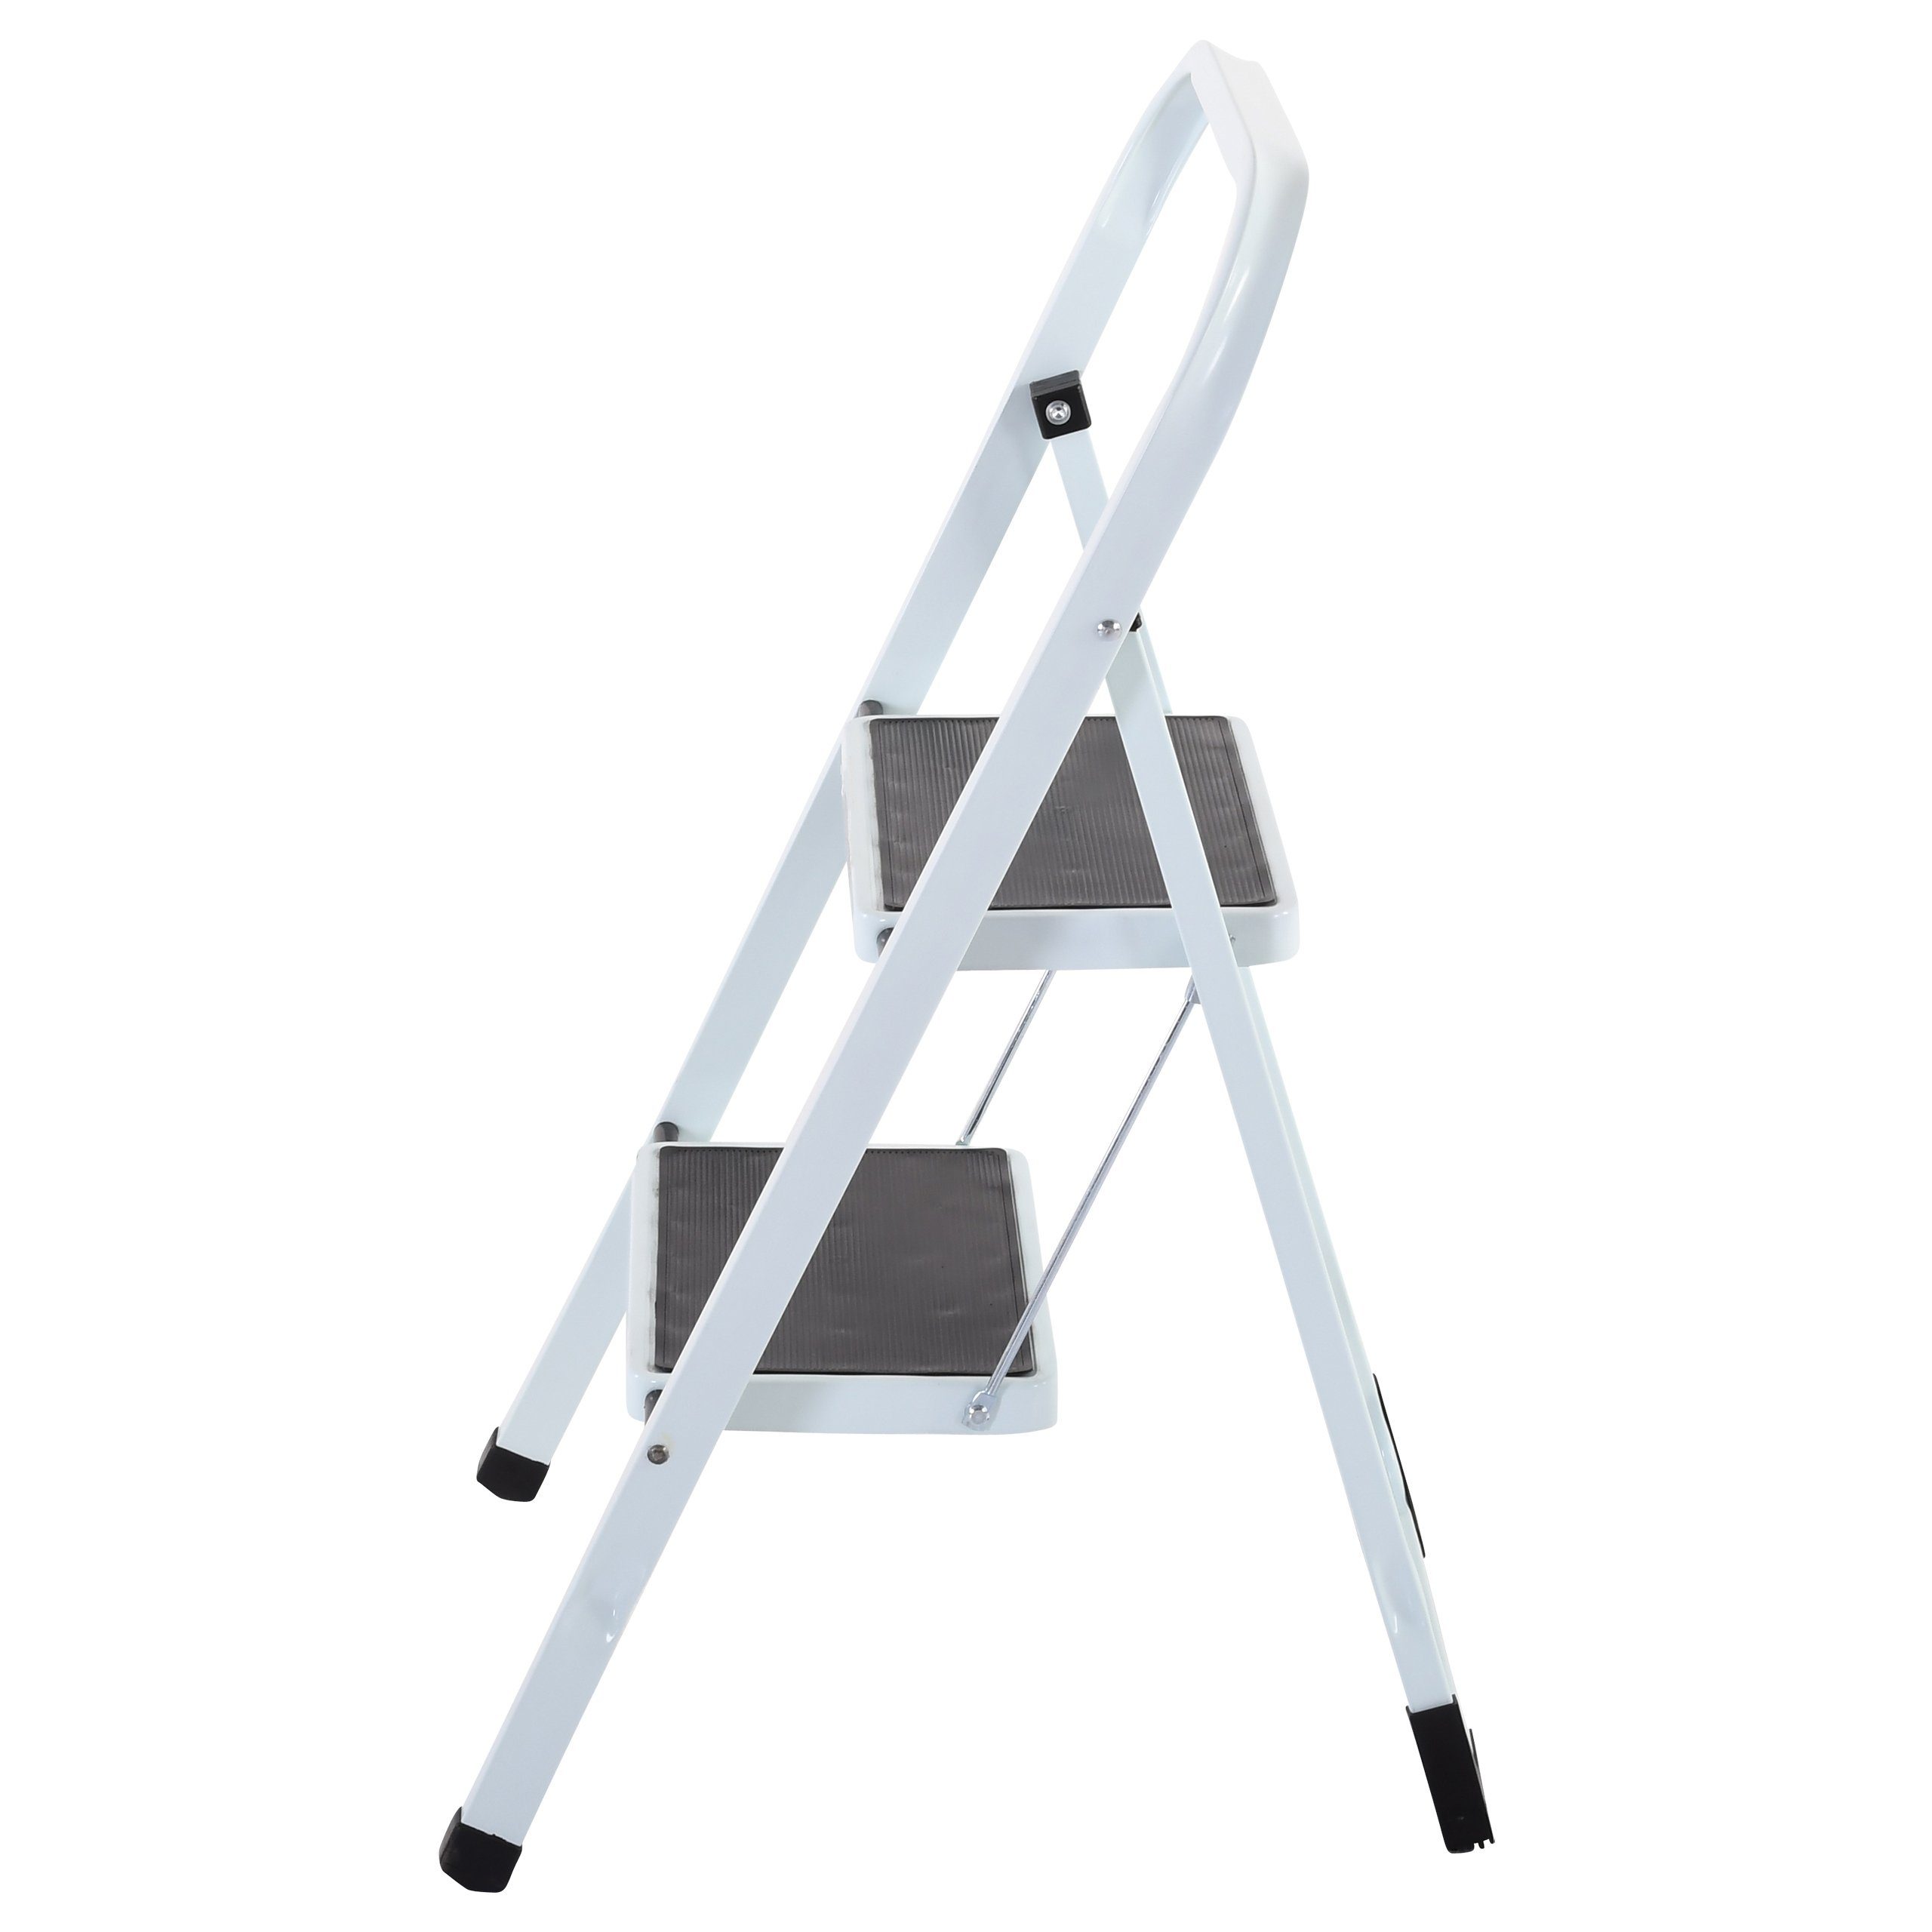 Oberfläche, 2 Klapptritt-Leiter, Stufen, mit Stahl, geprüft, TÜV/GS WEIß, Füße Raburg Lock-Klappsperre, rutschhemmende Solid-Grip STEP, Klapptritt oder 3